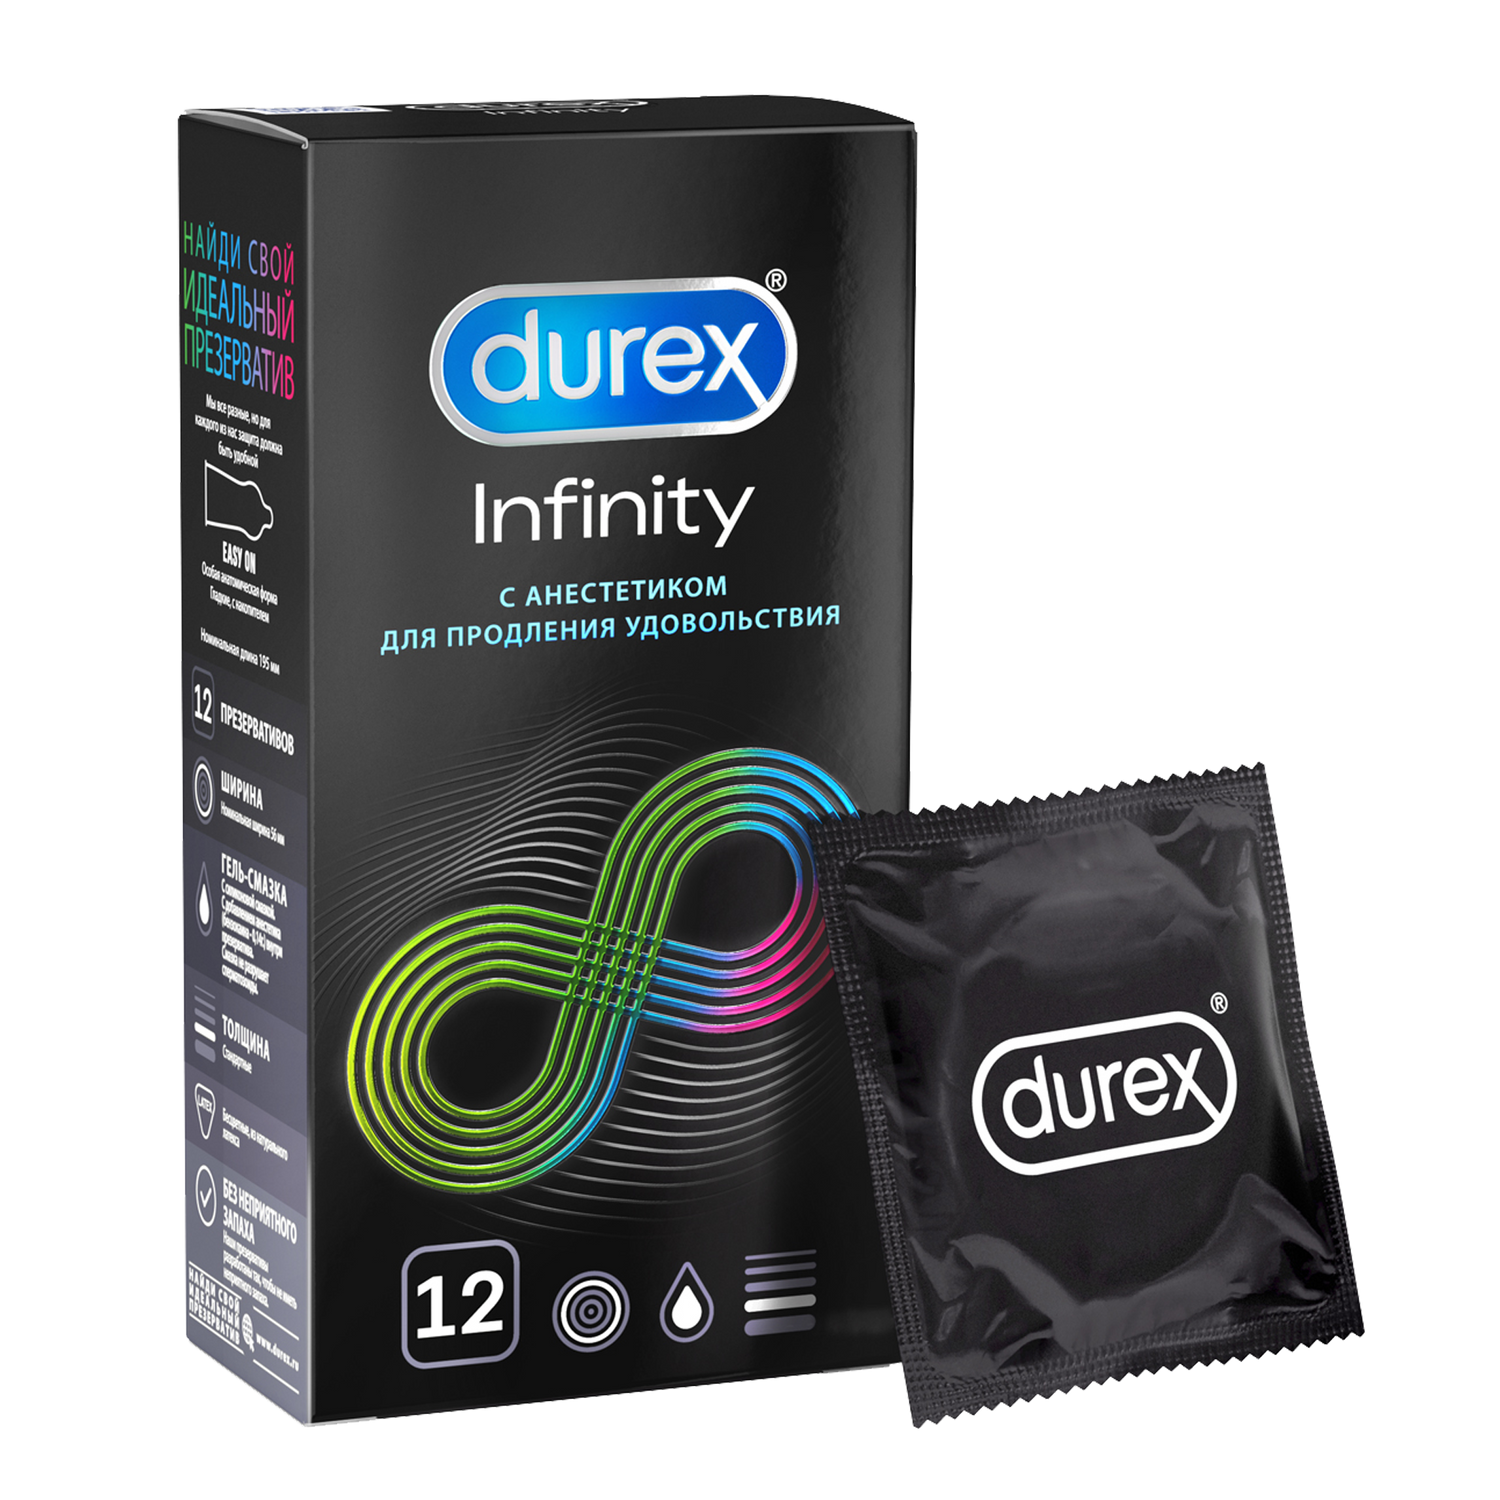 Презервативы Durex Infinity гладкие с анестетиком, 12 шт. презервативы durex dual extase рельефные с анестетиком 3 шт